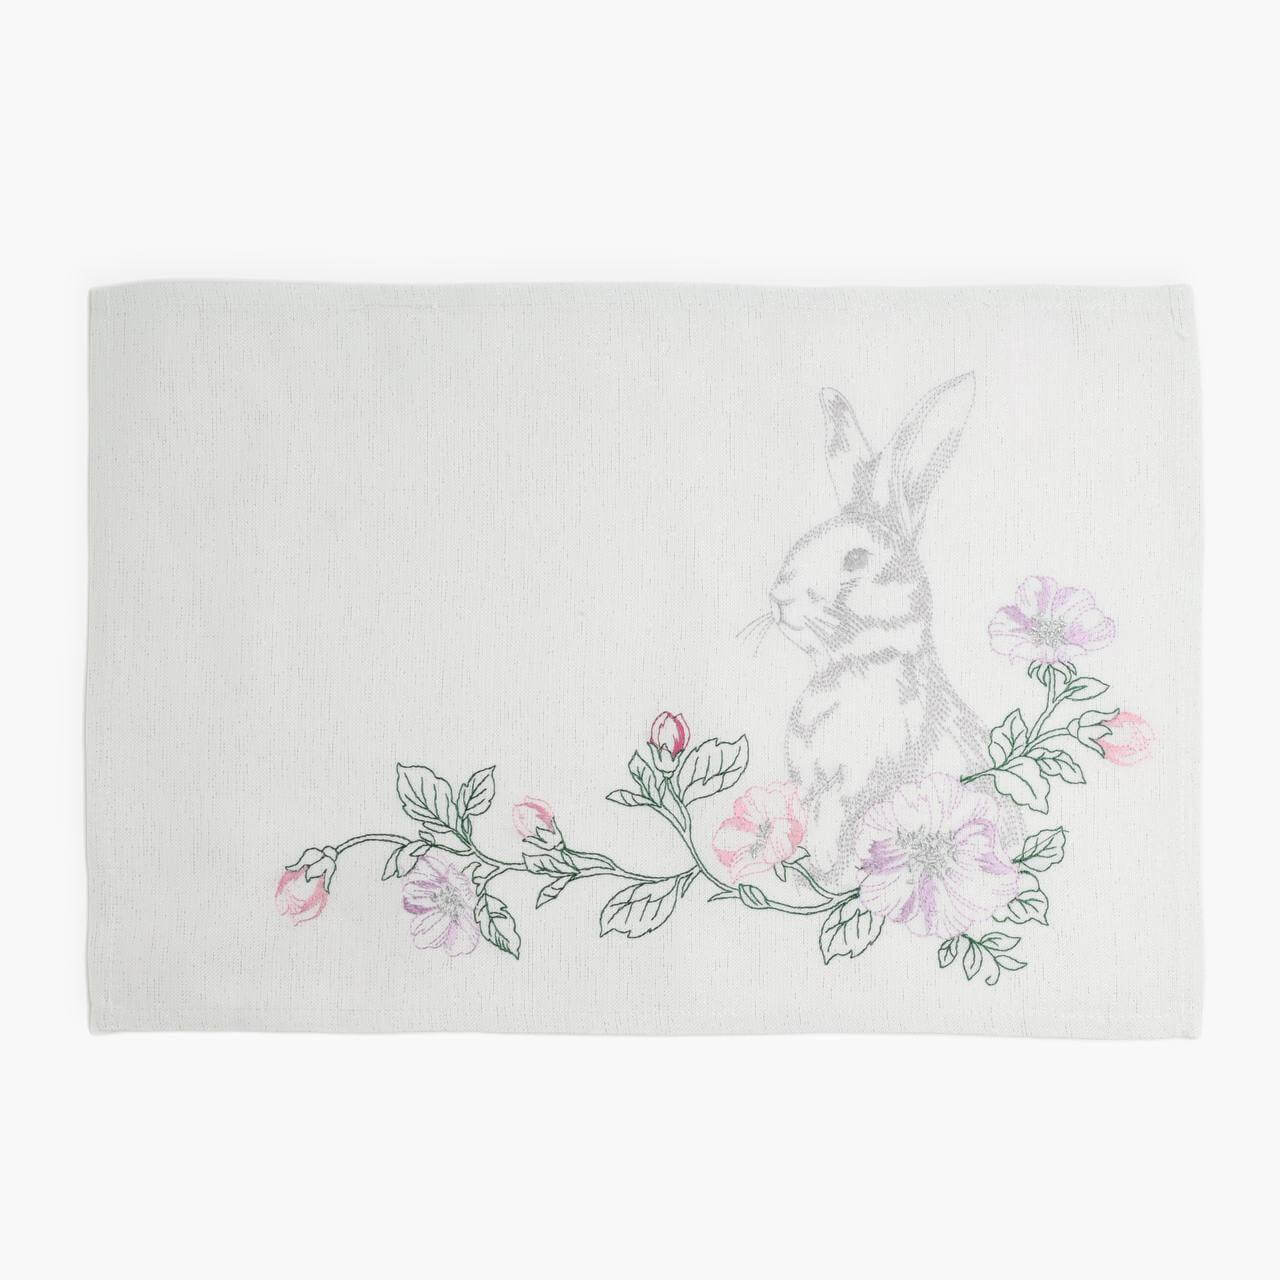 Салфетка под приборы, 30x45 см, полиэстер, прямоугольная, белая, Кролик в цветах, Pure Easter салфетка микрофибра raccoon